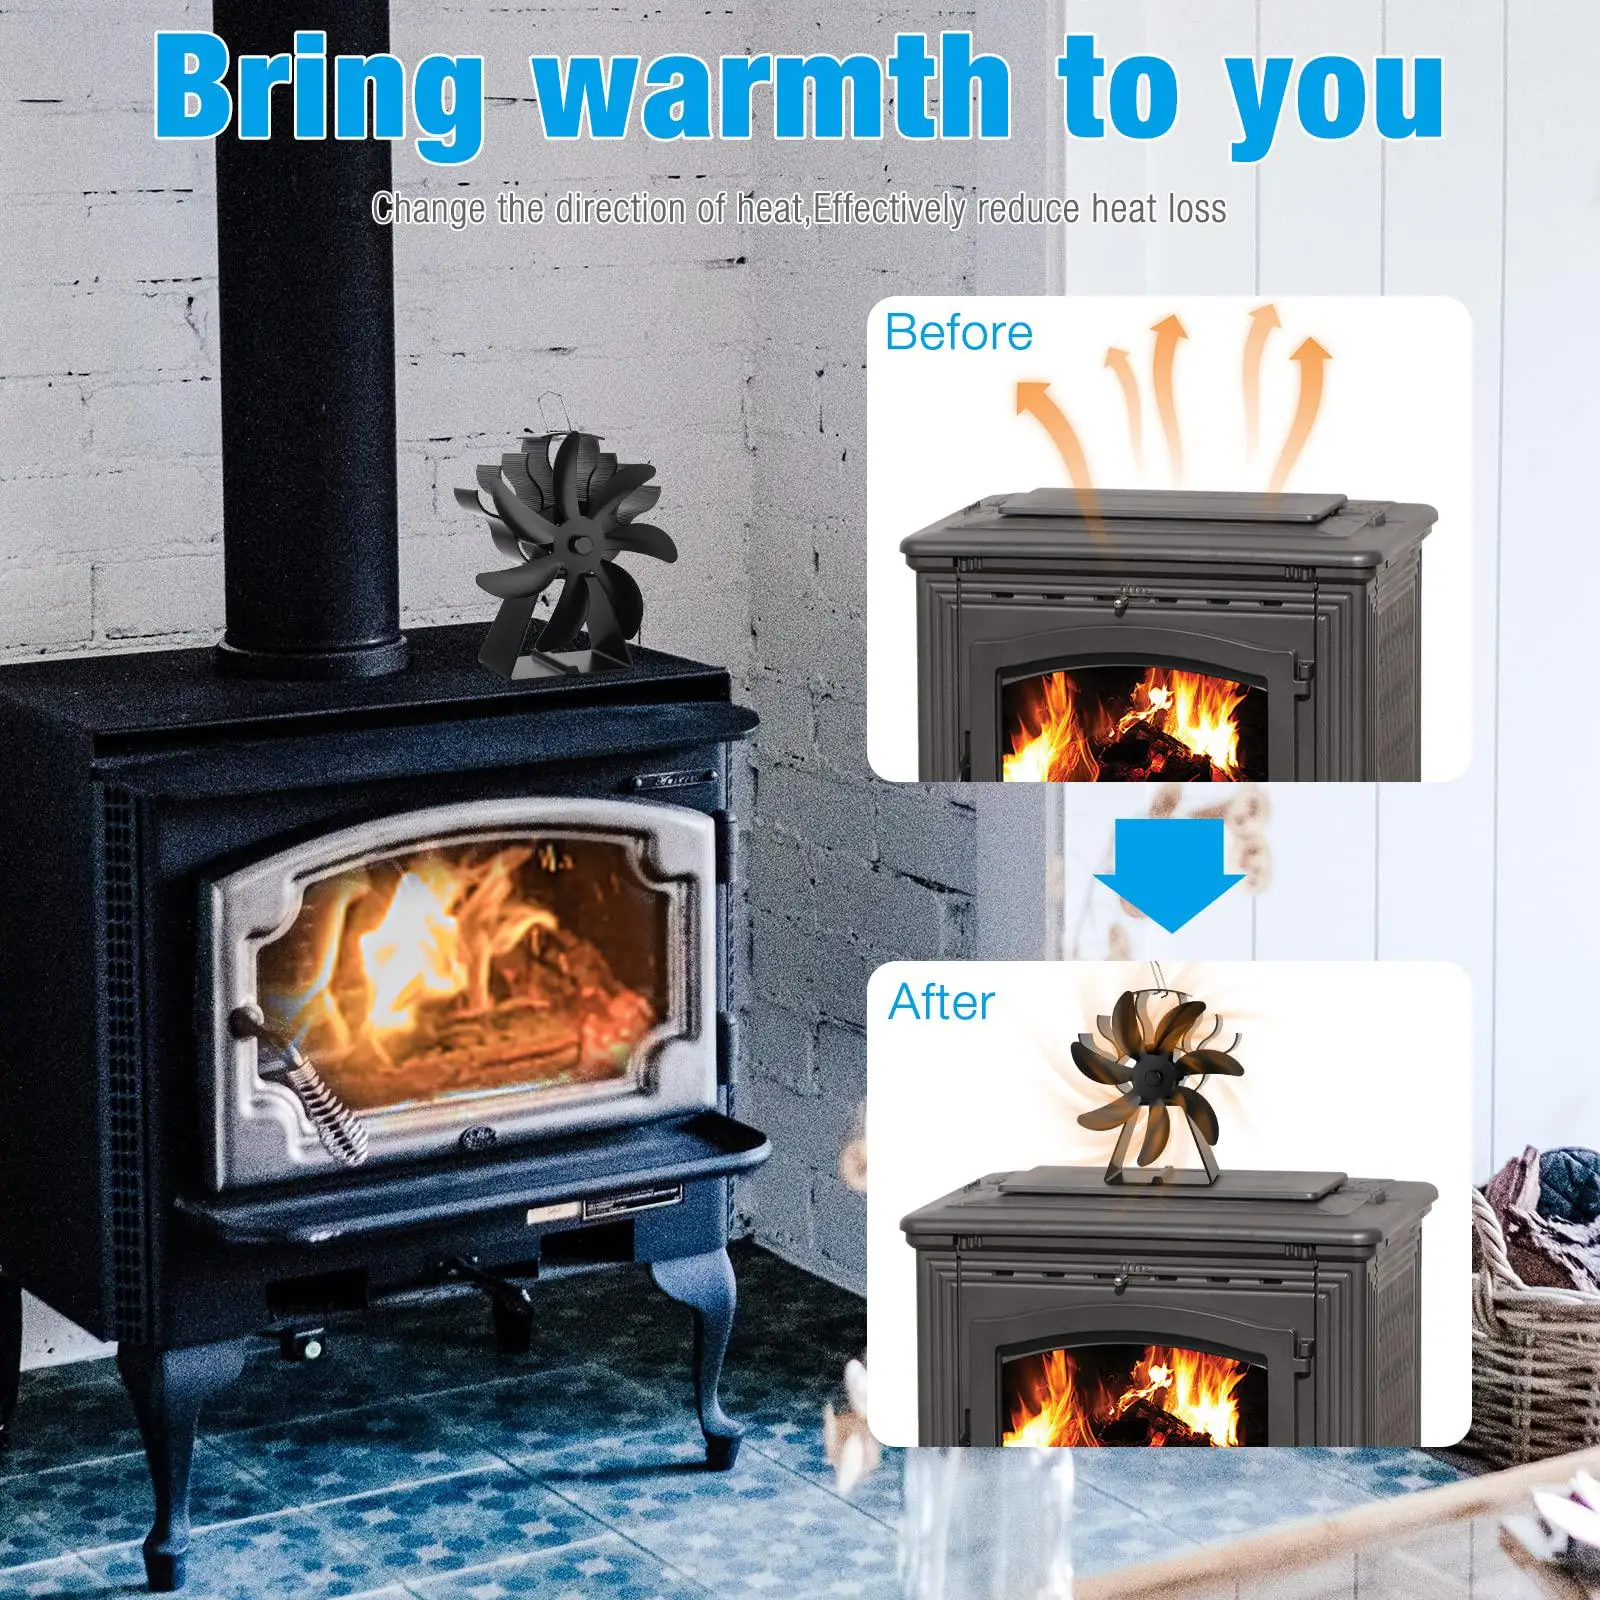 Fan with Temperature Meter fan Fireplace Fan Thermodynamic Furnace Fan for Burner Wood Burning Pellet